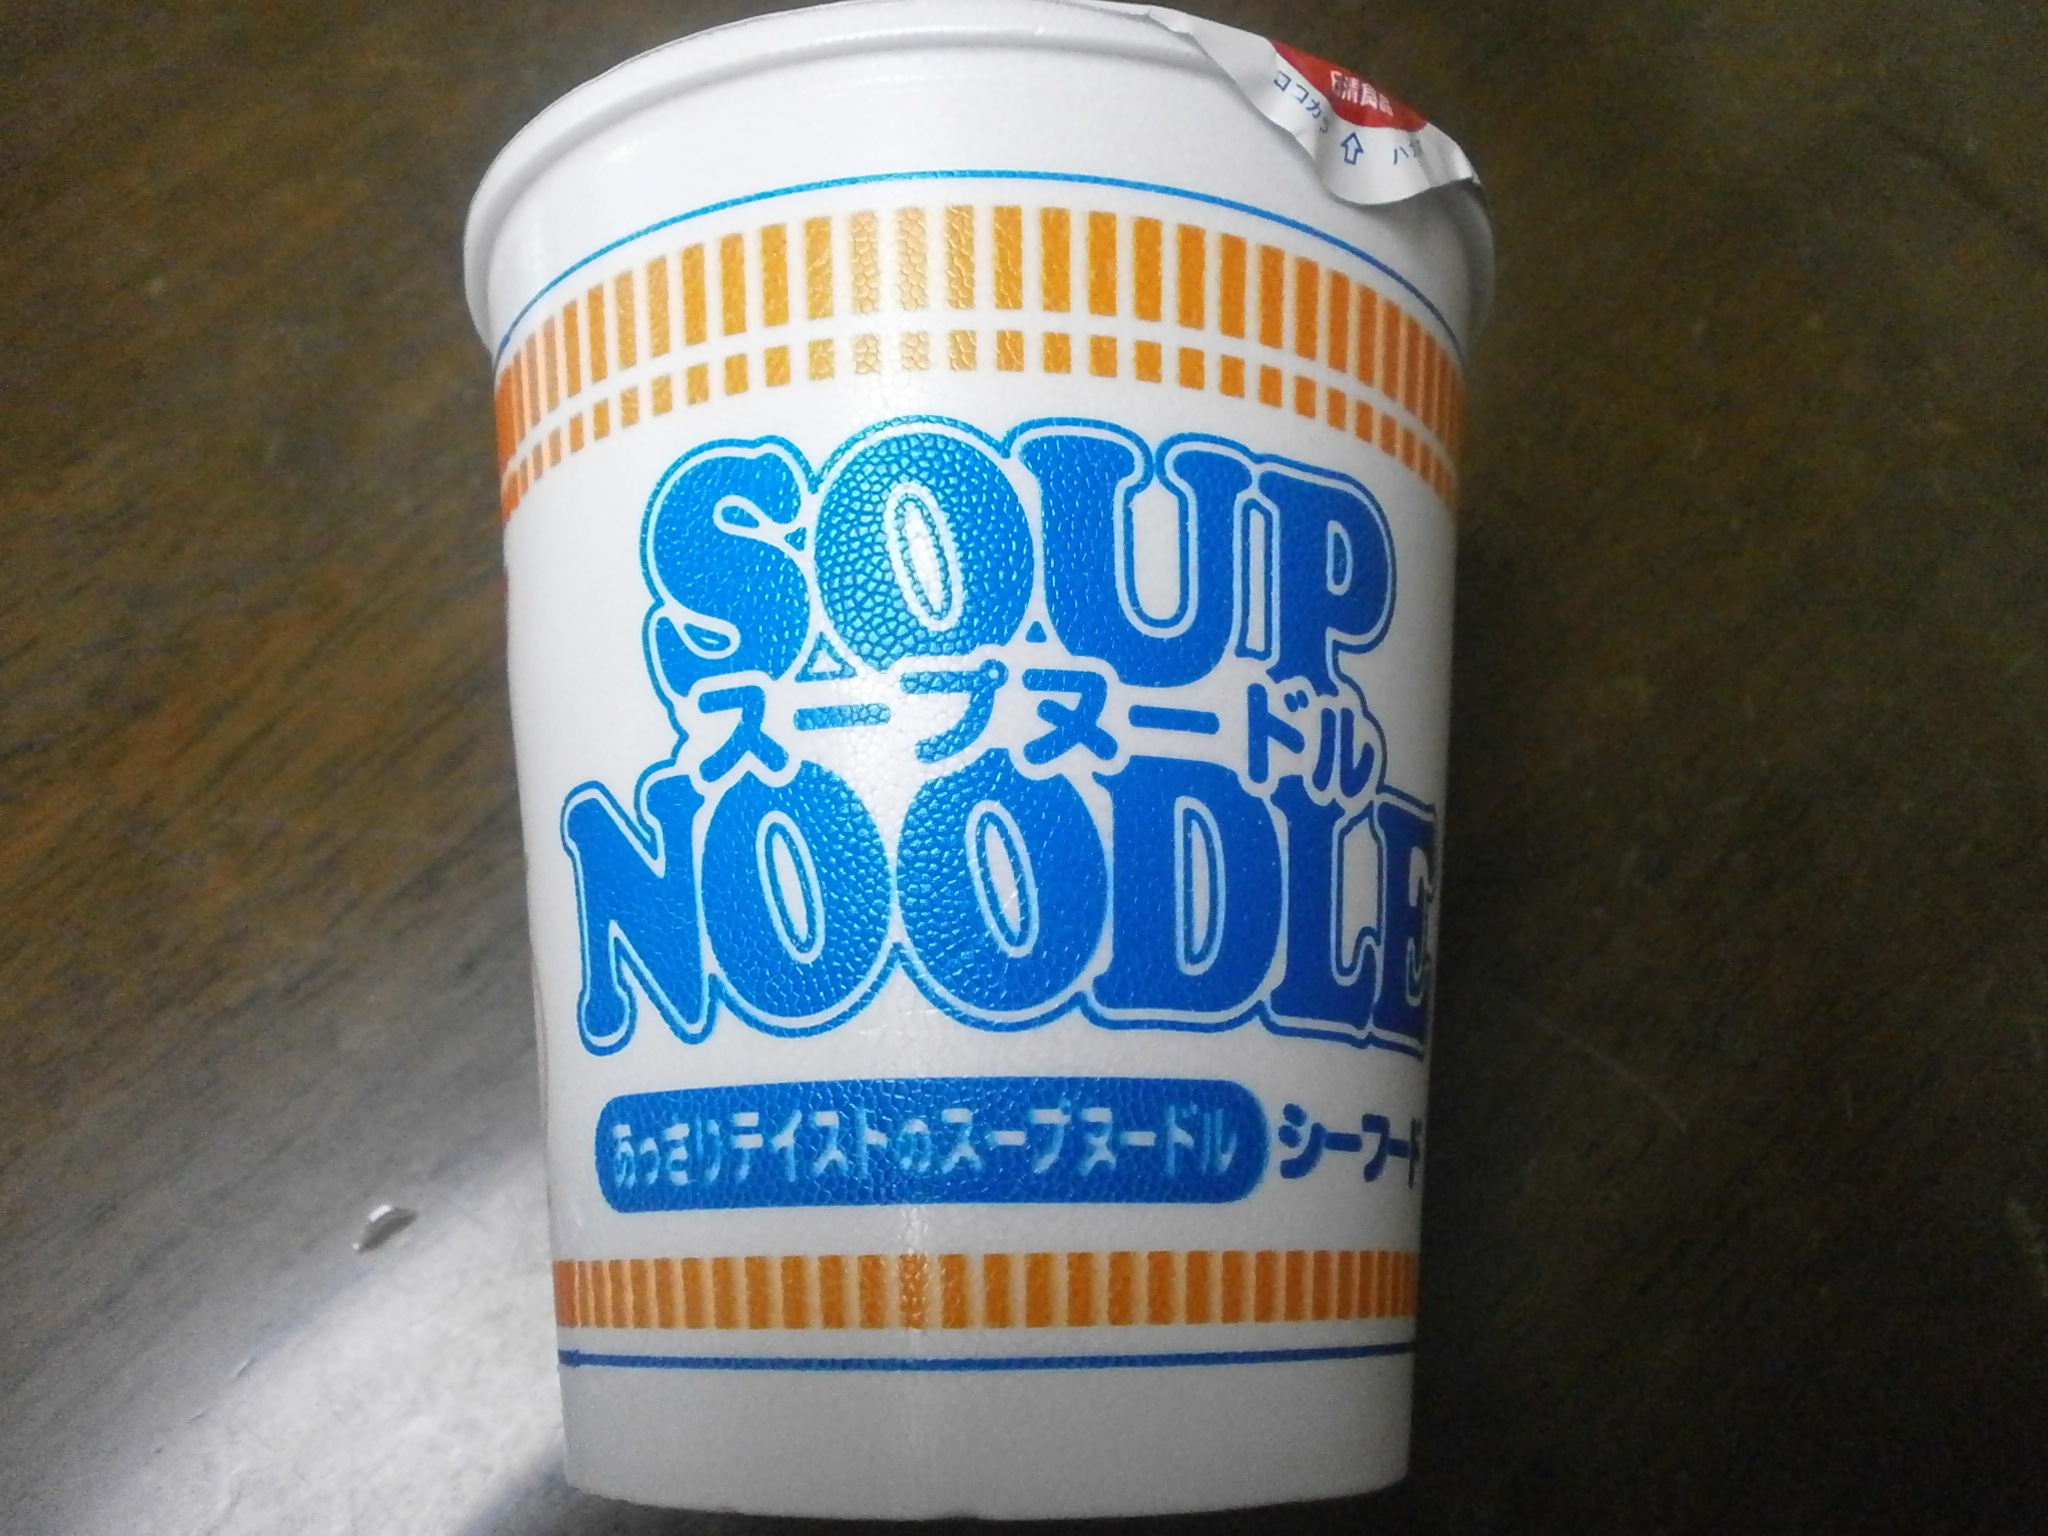 Which high-calorie? Noodle Soup (Curry)? Noodle soup (seafood)?